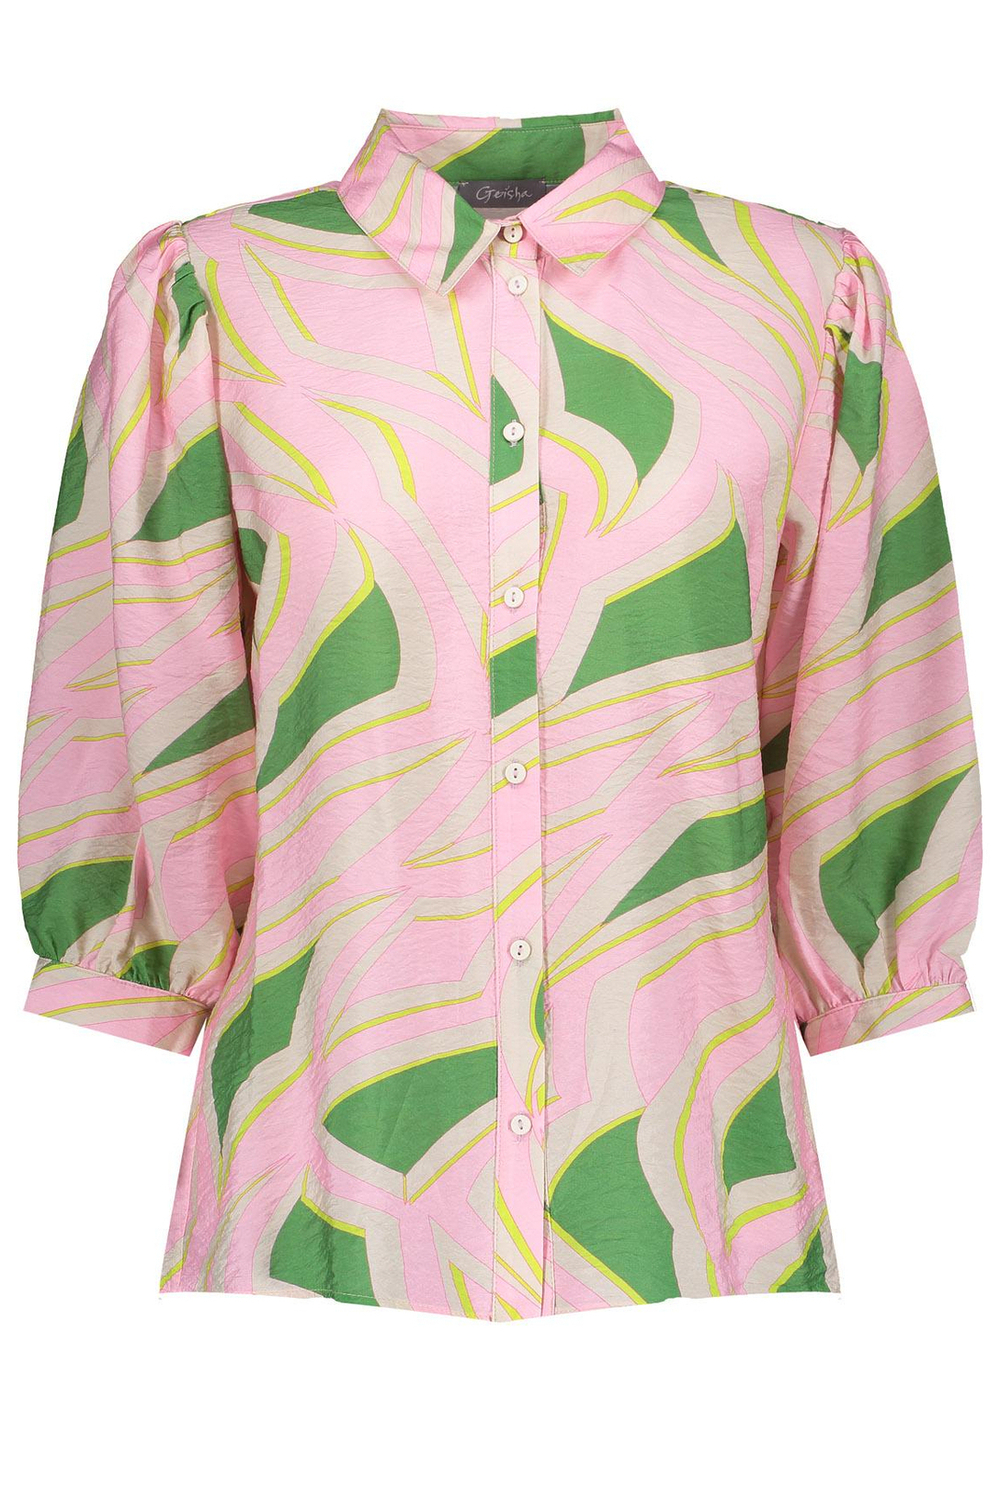 lijn Oriëntatiepunt combineren blouse 33220-20 geisha blouse green/light pink combi